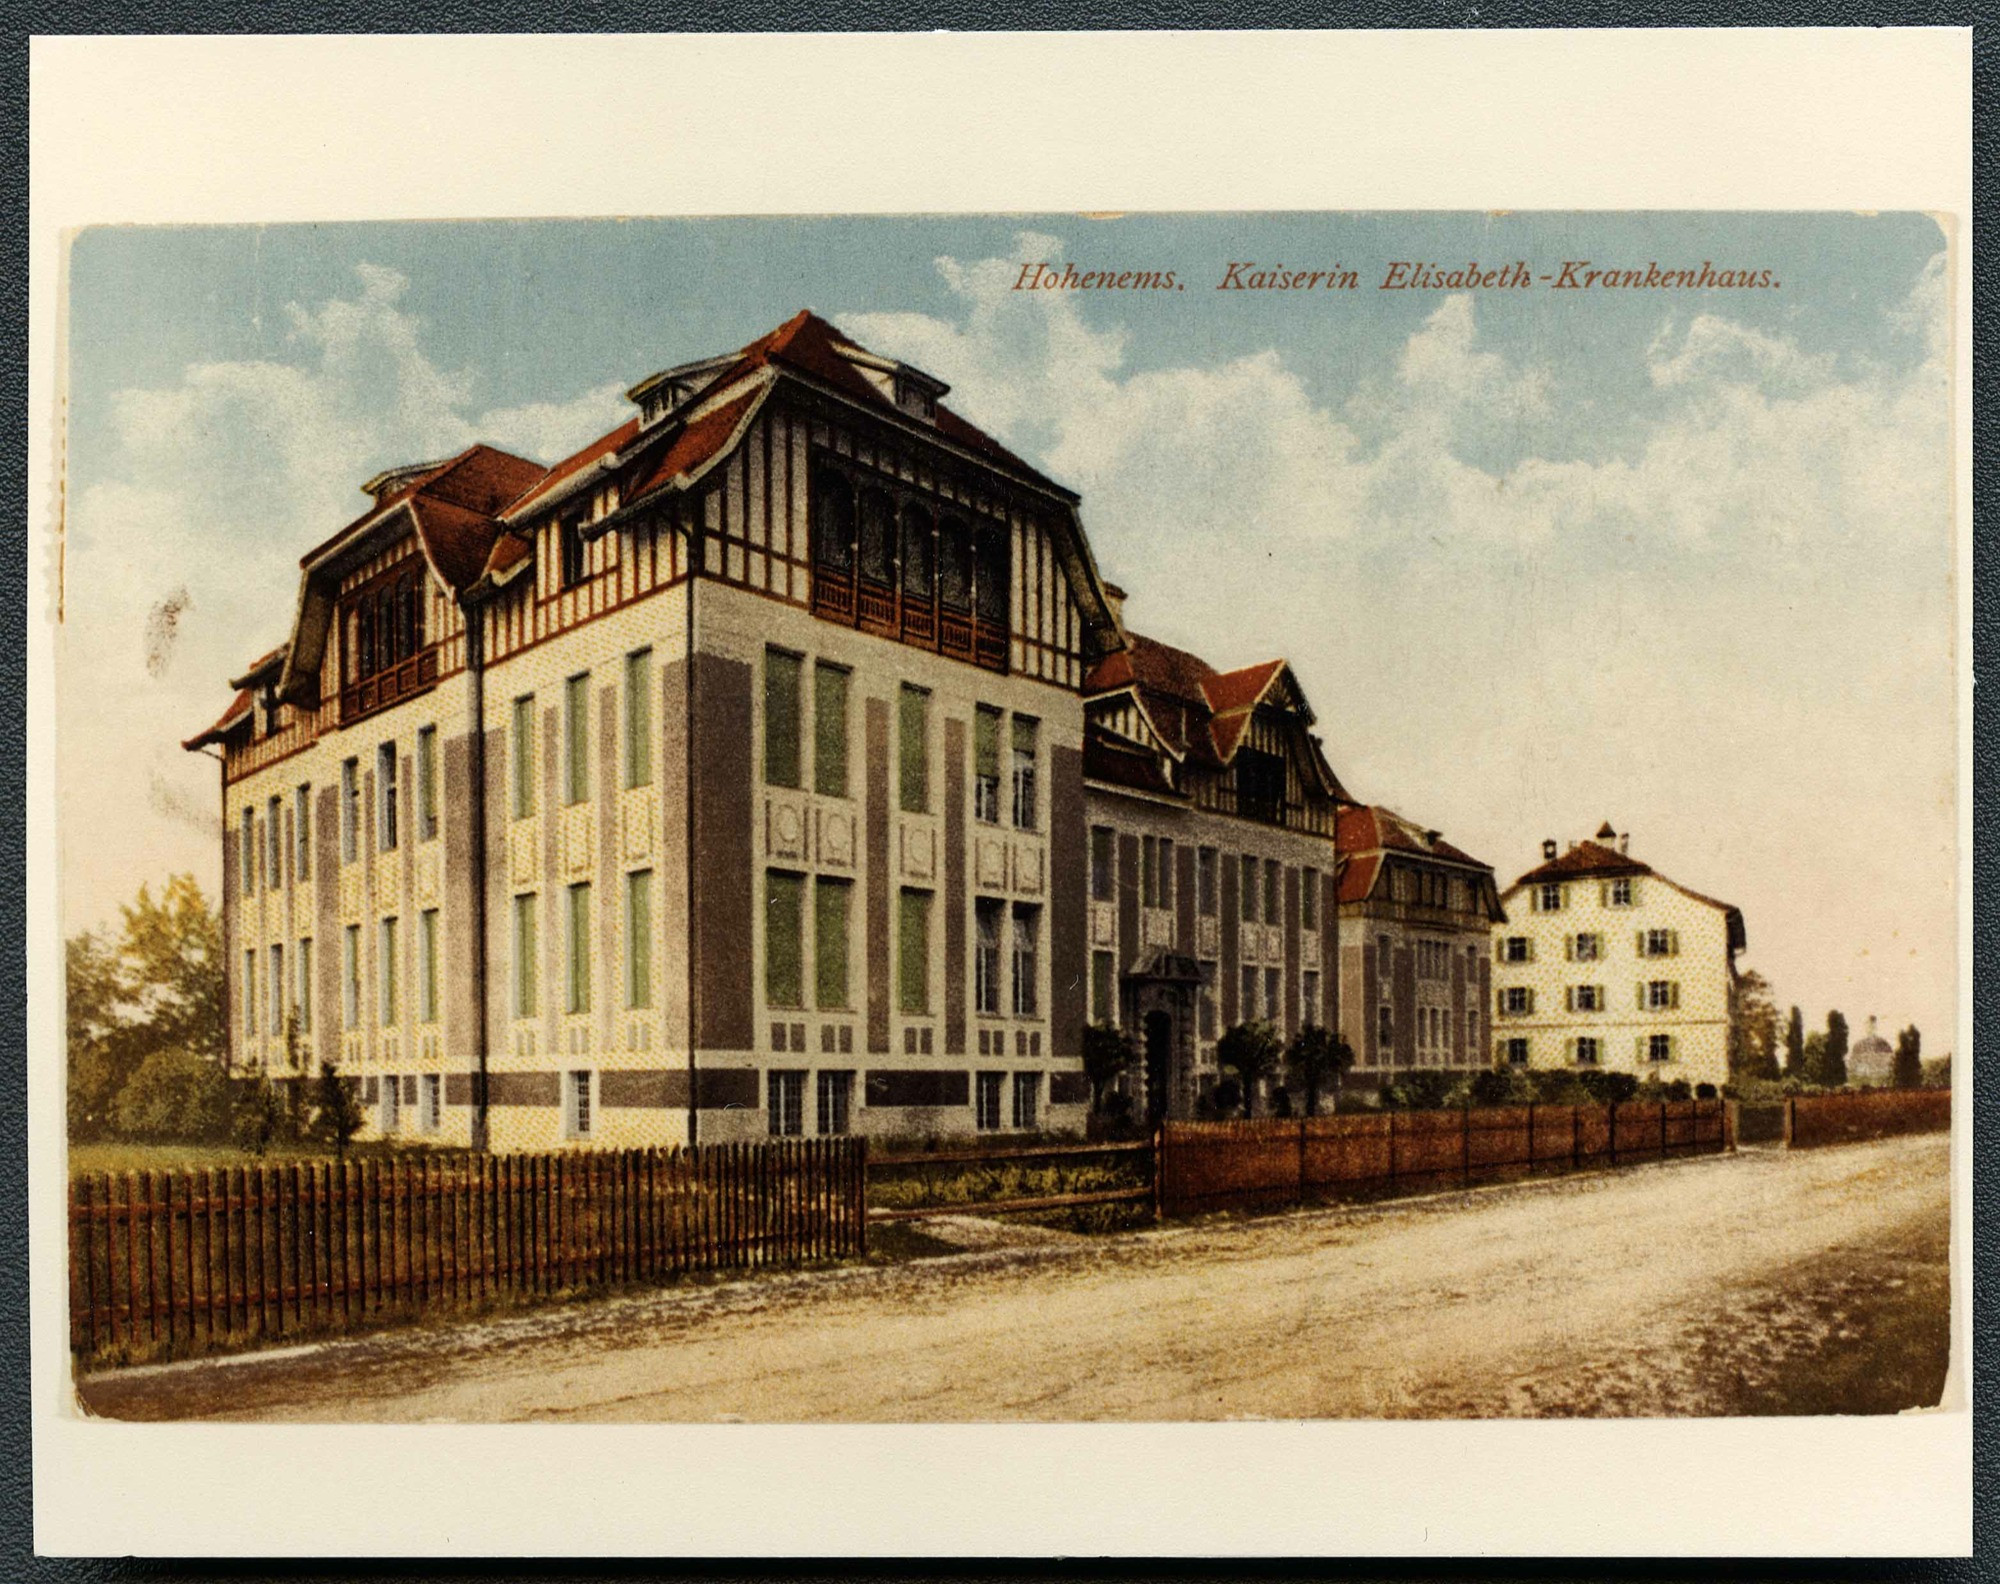 Postkarte des ehemaligen Kaiserin Elisabeth Krankenhaus von 1918